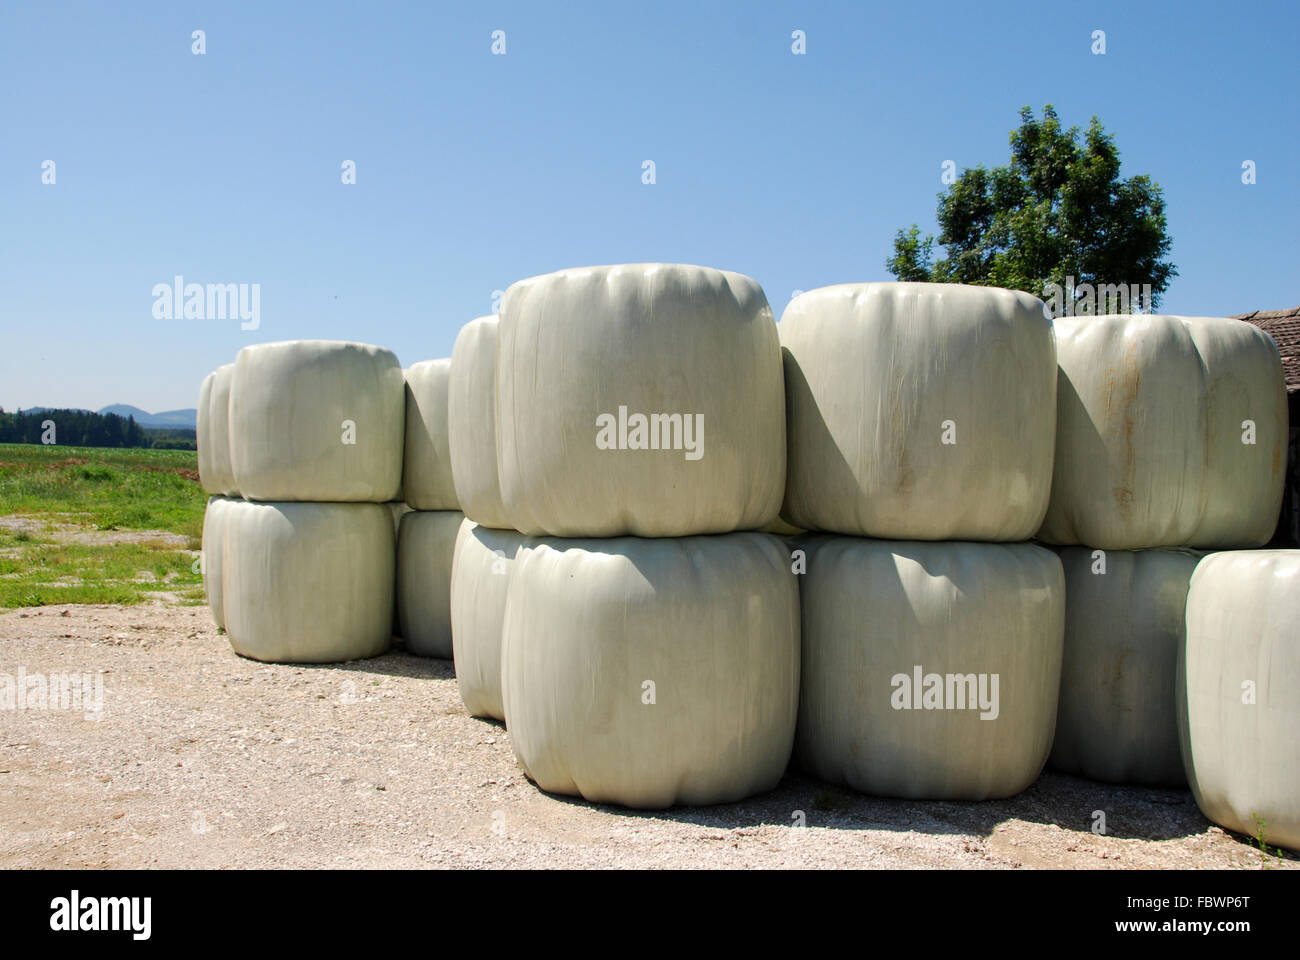 Plastic hay bales Stock Photo